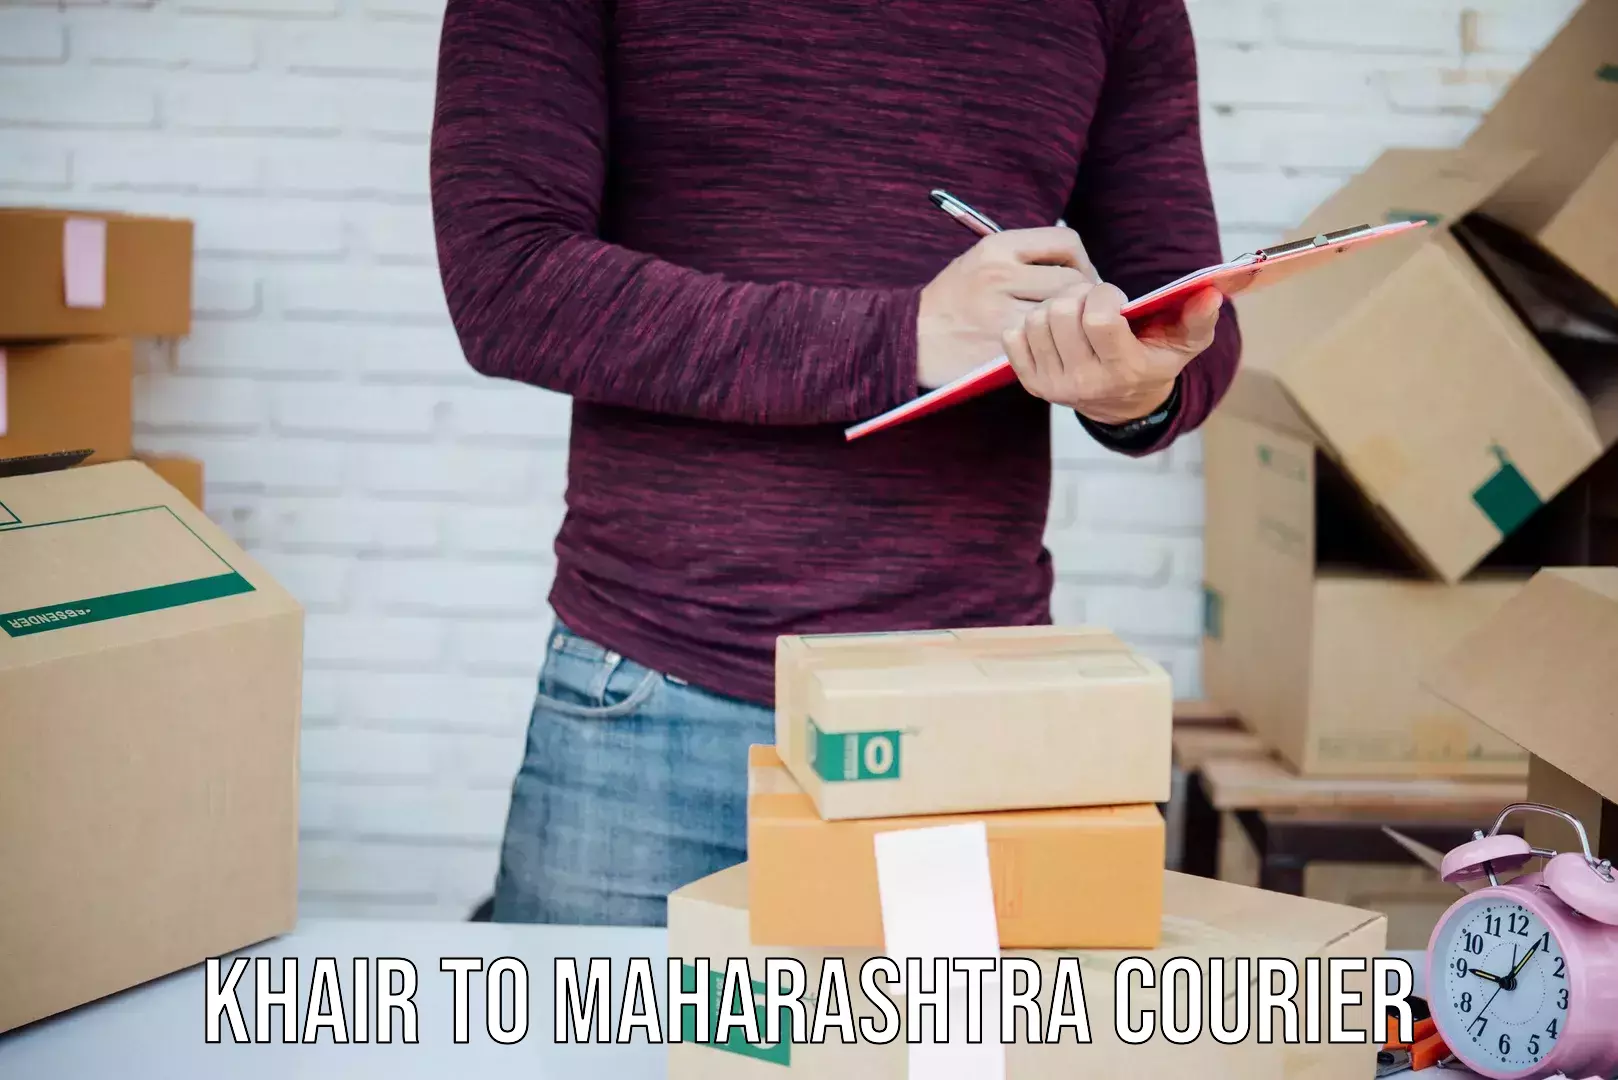 Express courier capabilities Khair to Maharashtra